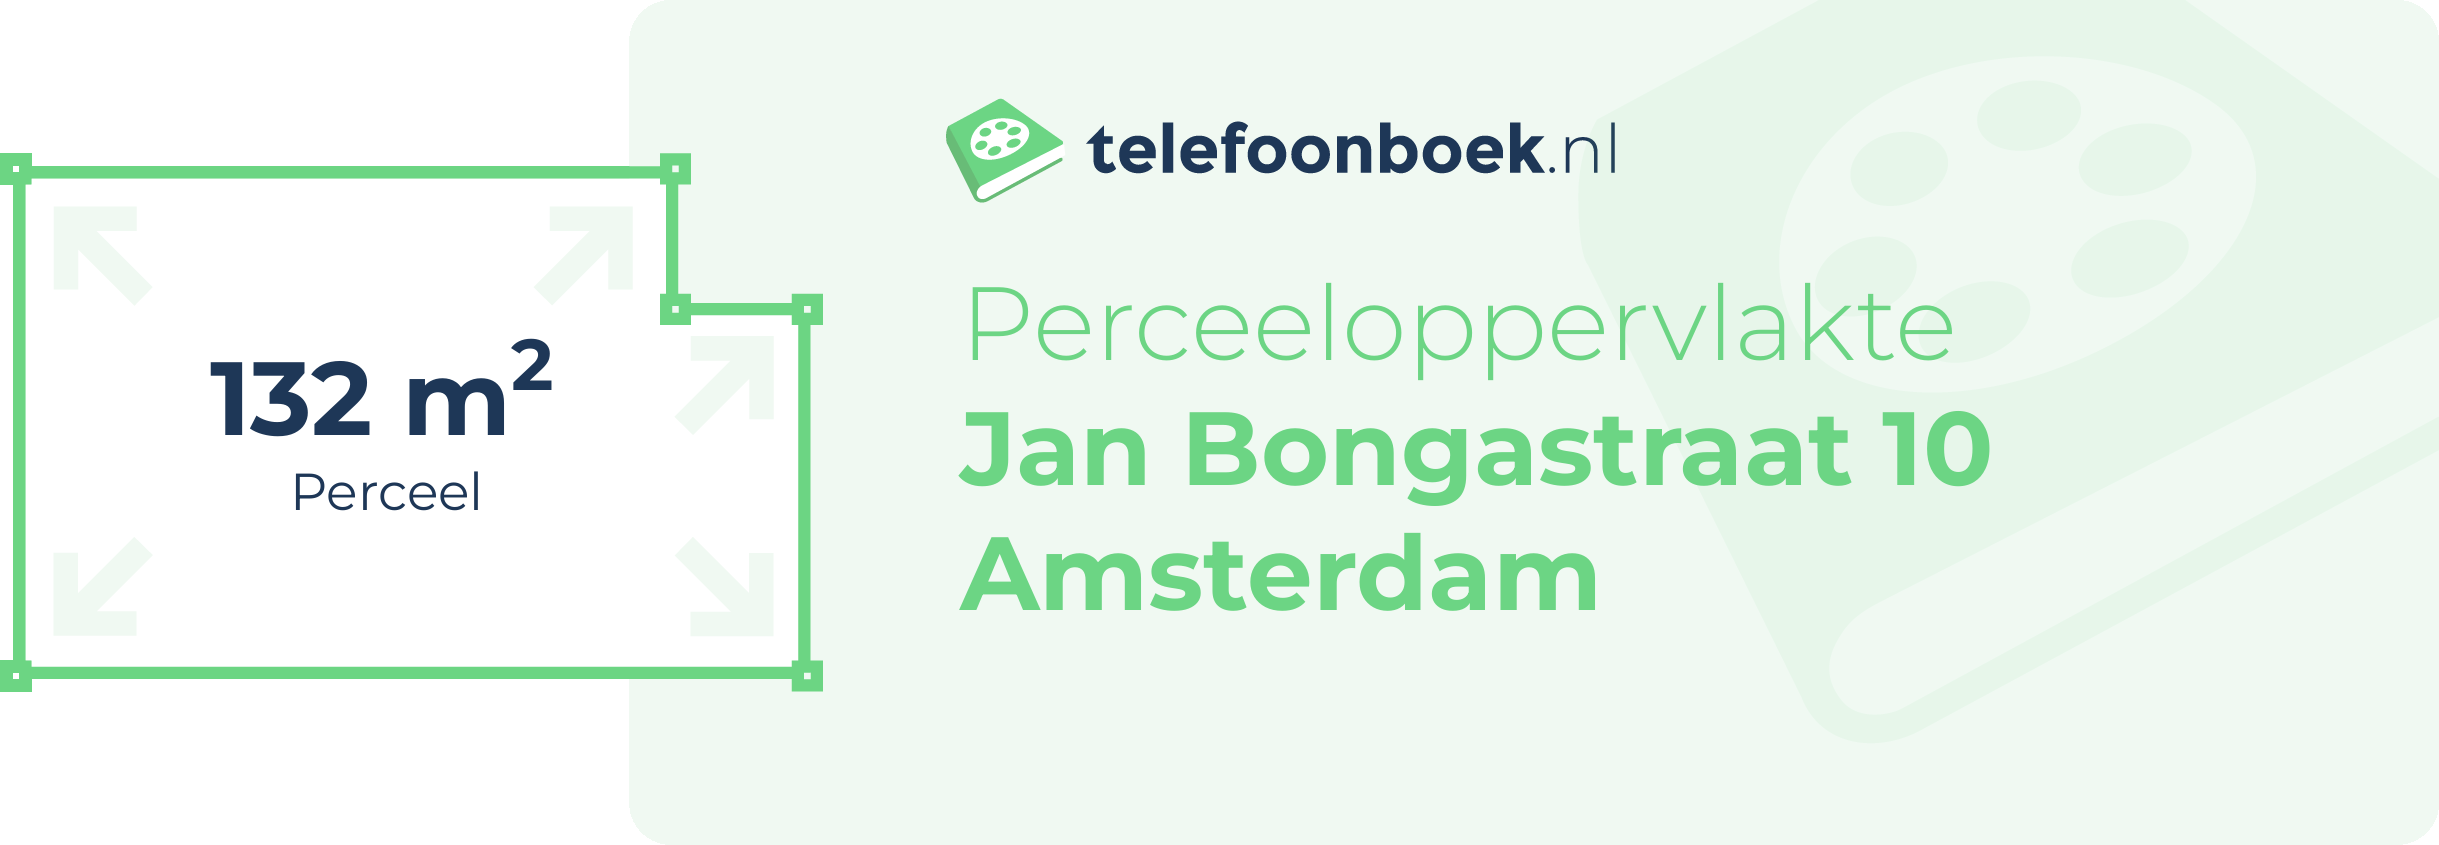 Perceeloppervlakte Jan Bongastraat 10 Amsterdam